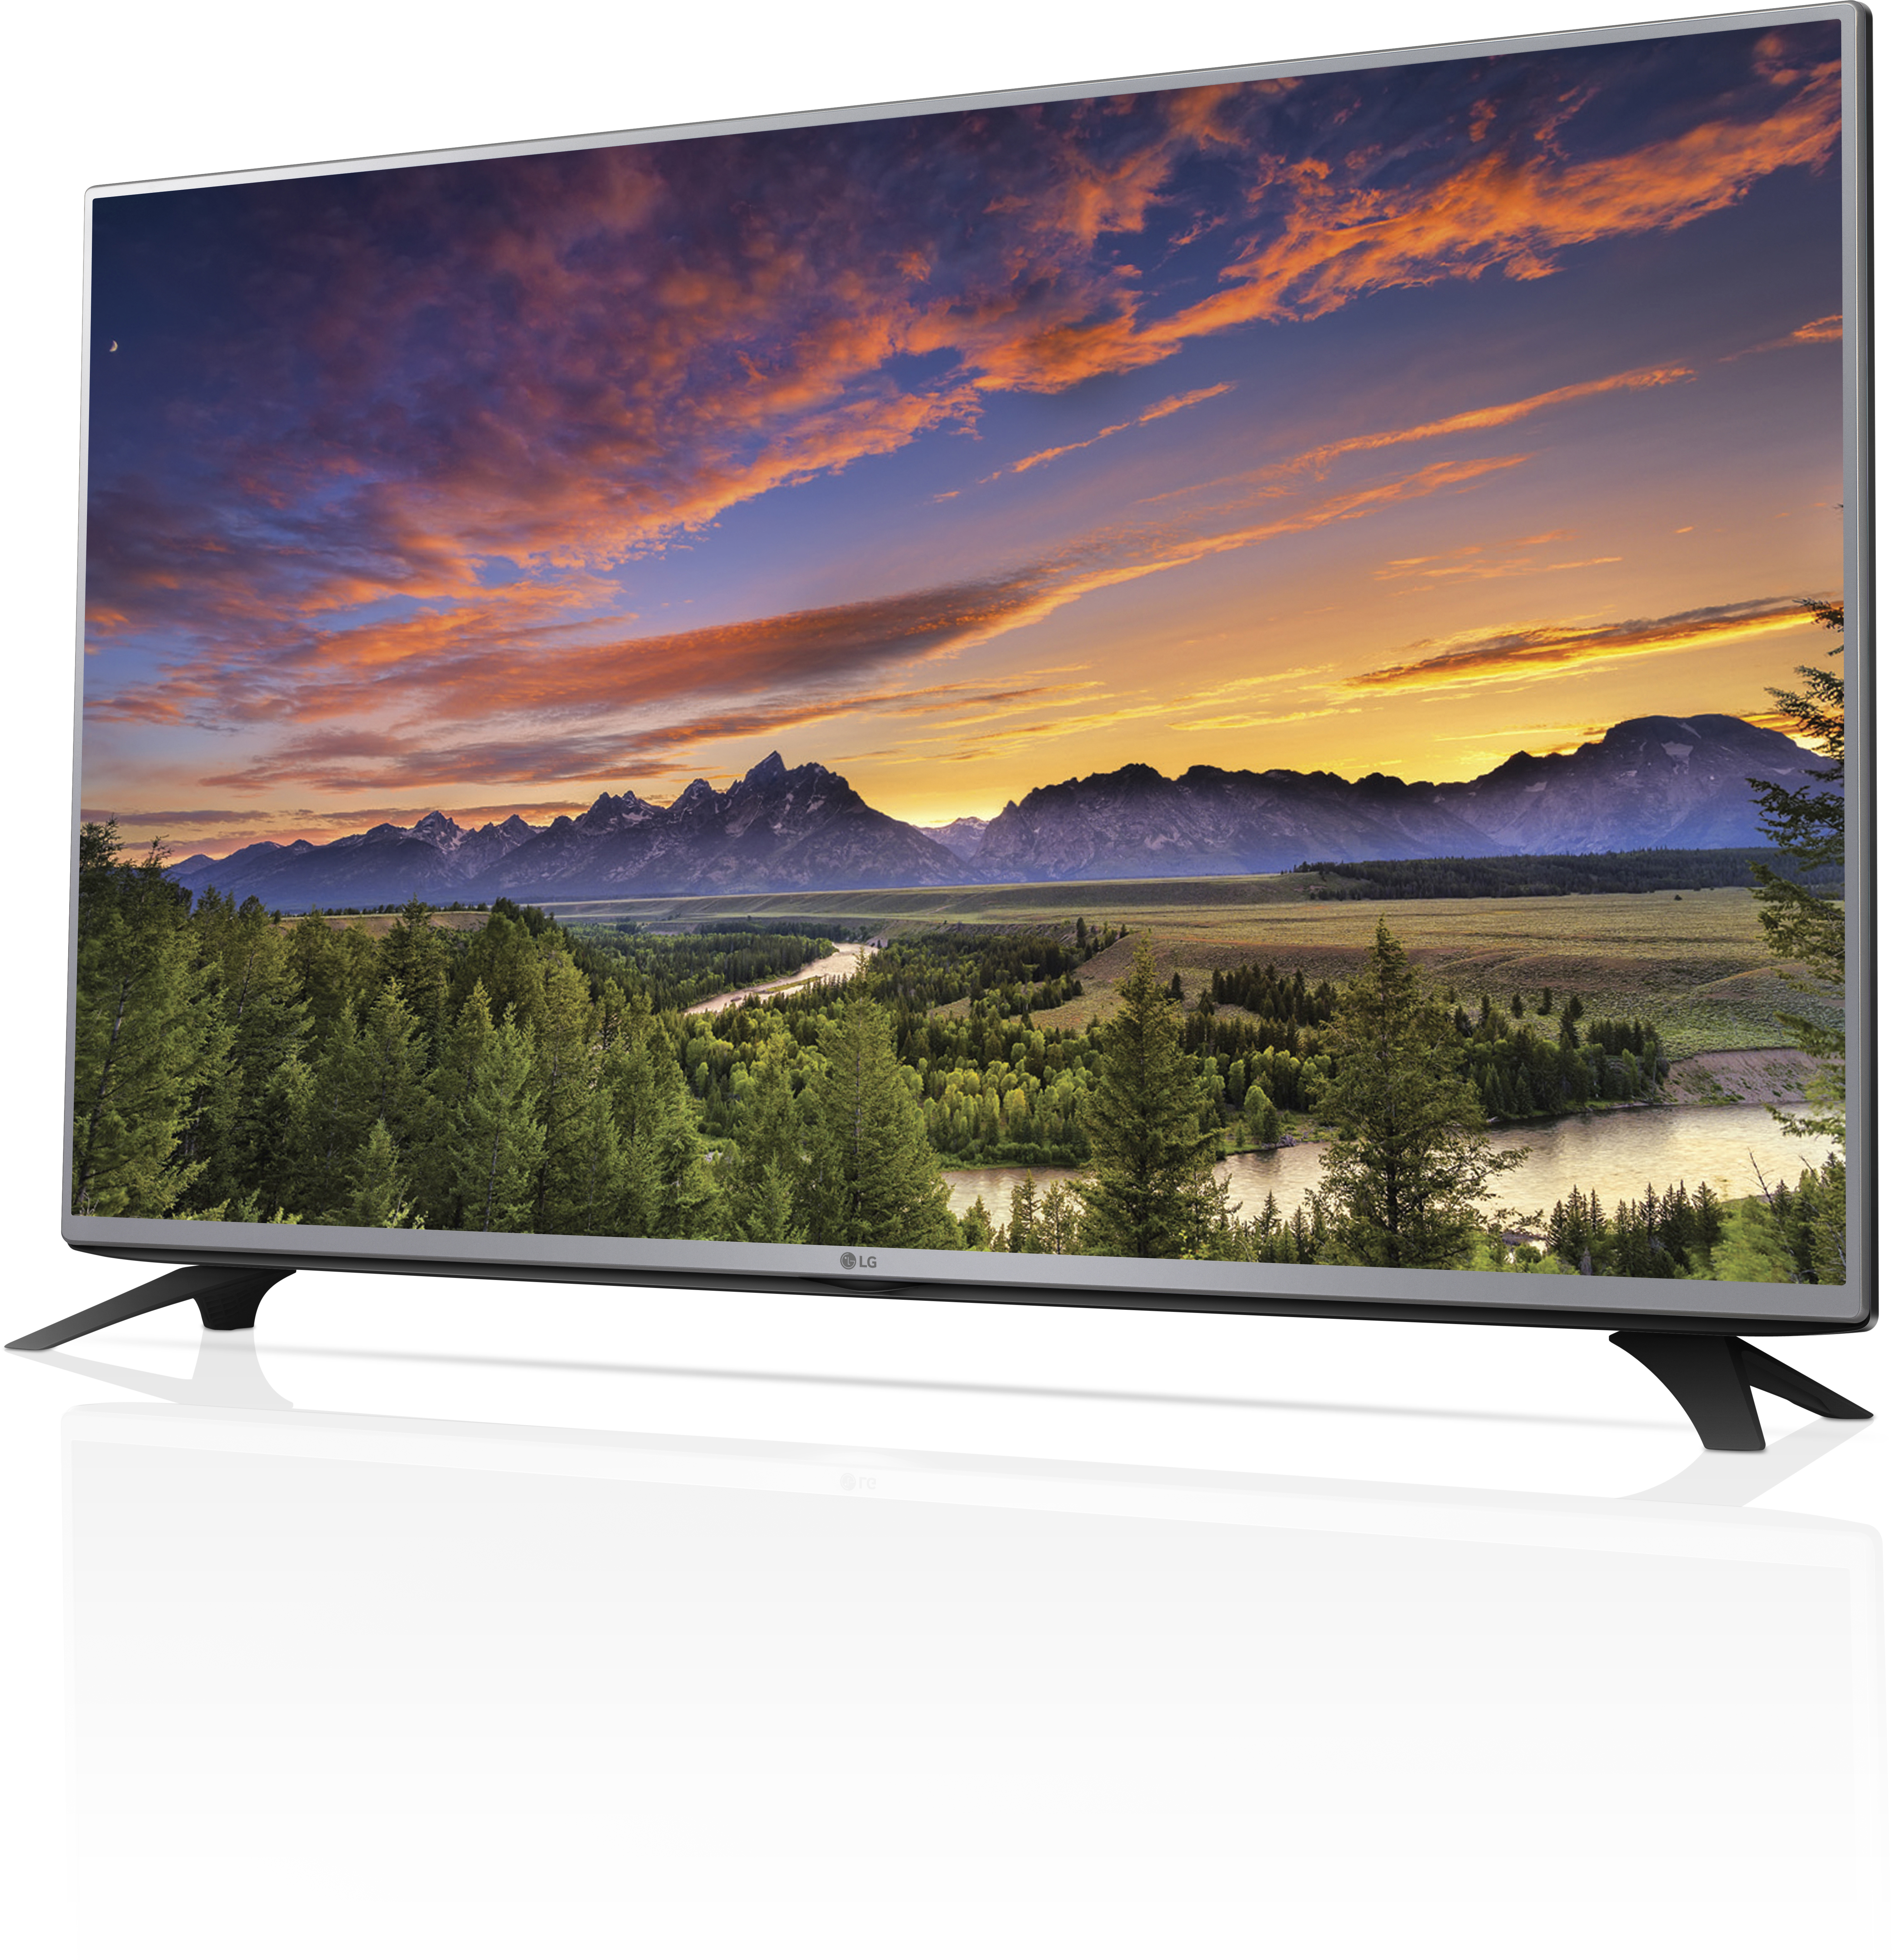 Купить телевизор в махачкале. LG 32lf551c. LG 32lf562u. LG 32lf510u. LG 32lf560u.